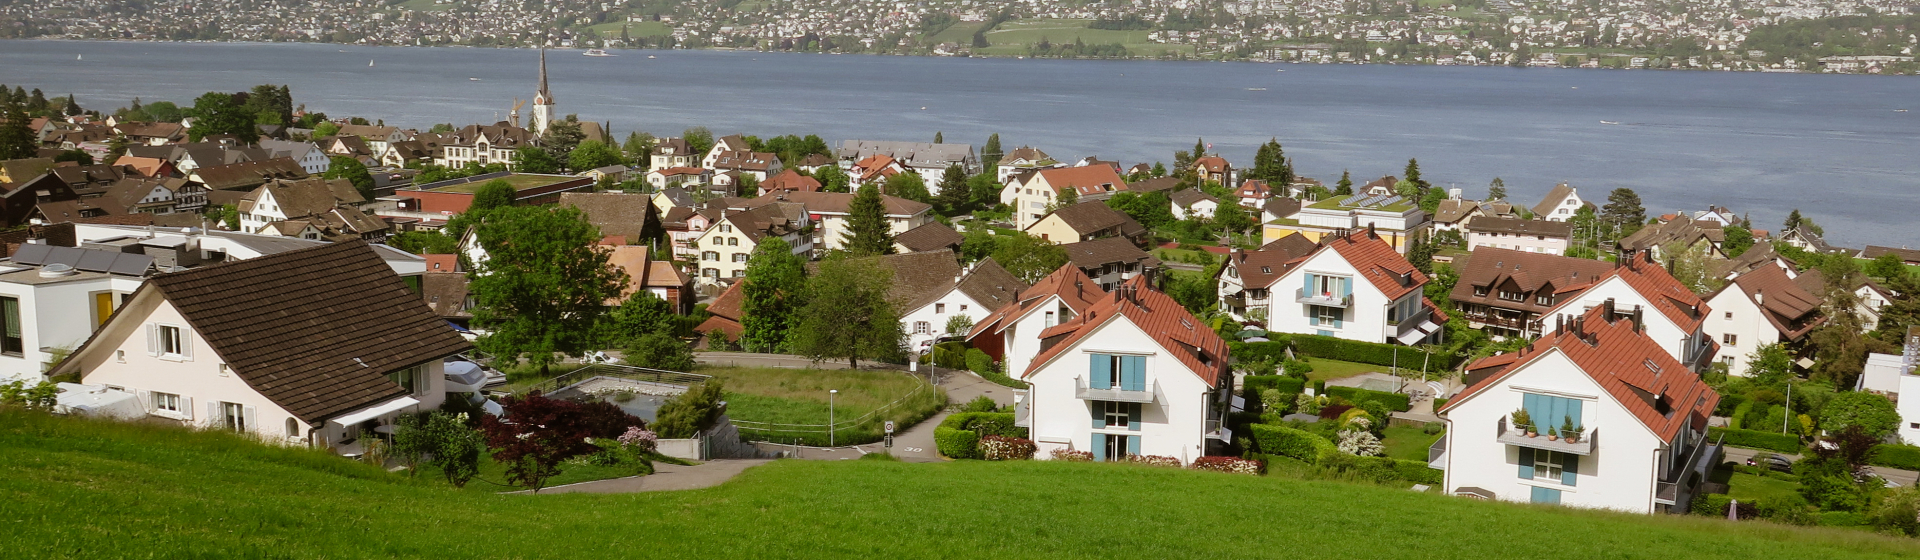 Oberrieden am Zürichsee